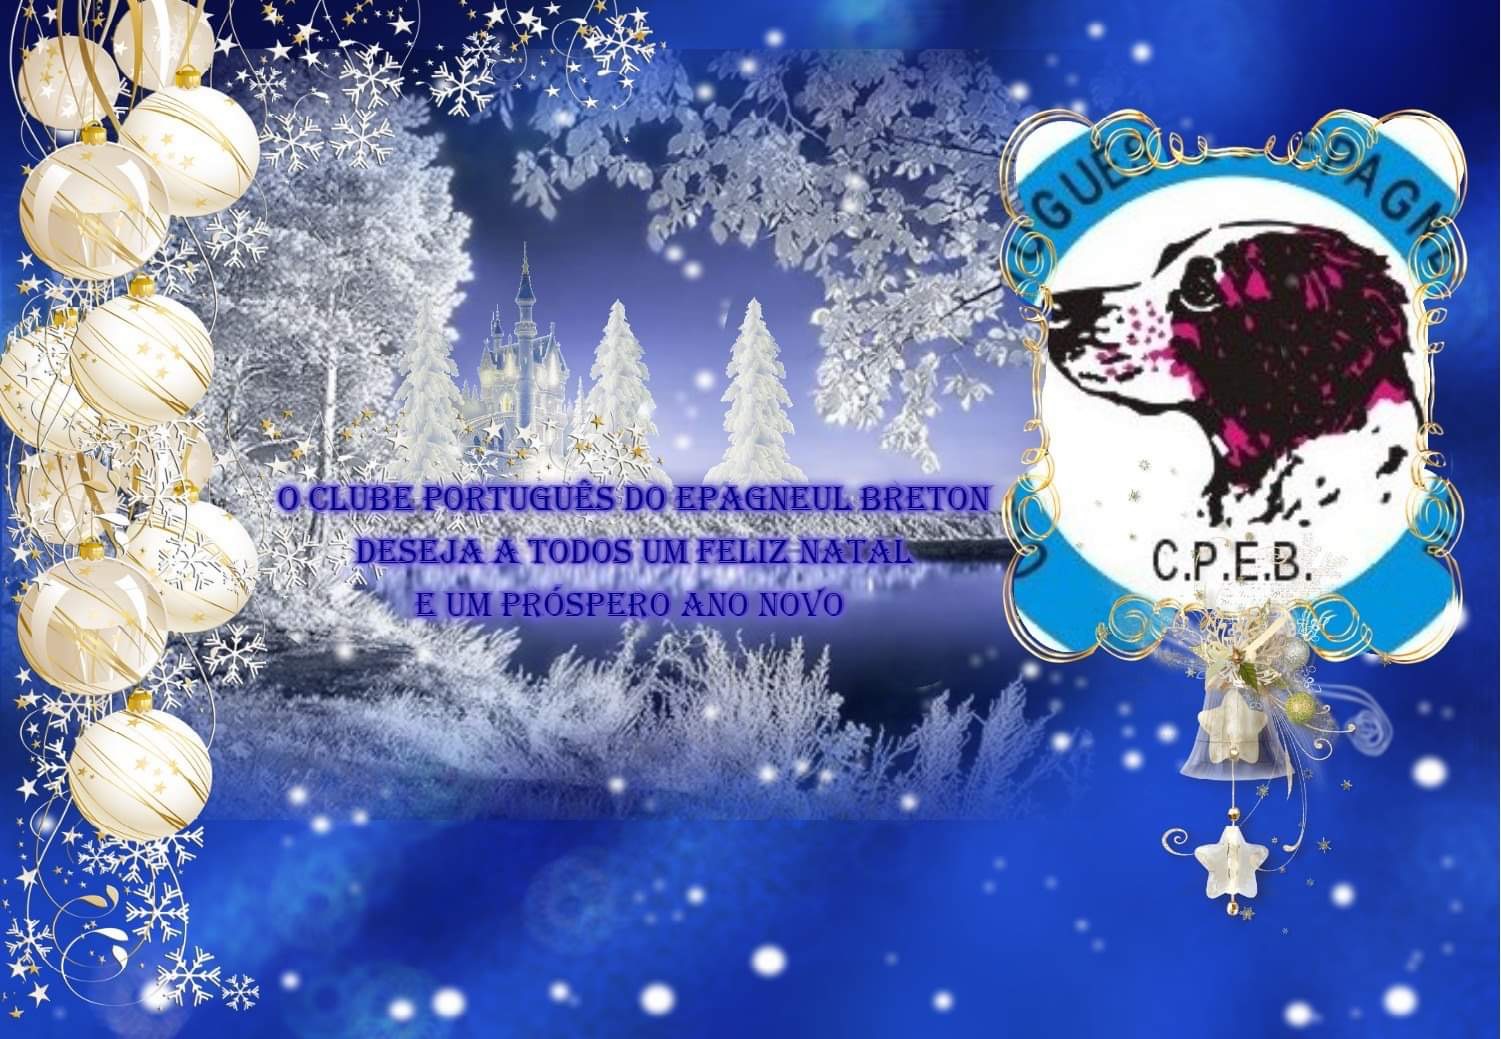 O Clube Português do Epagneul Breton deseja a todos um Feliz Natal e um Próspero Ano Novo de 2021.